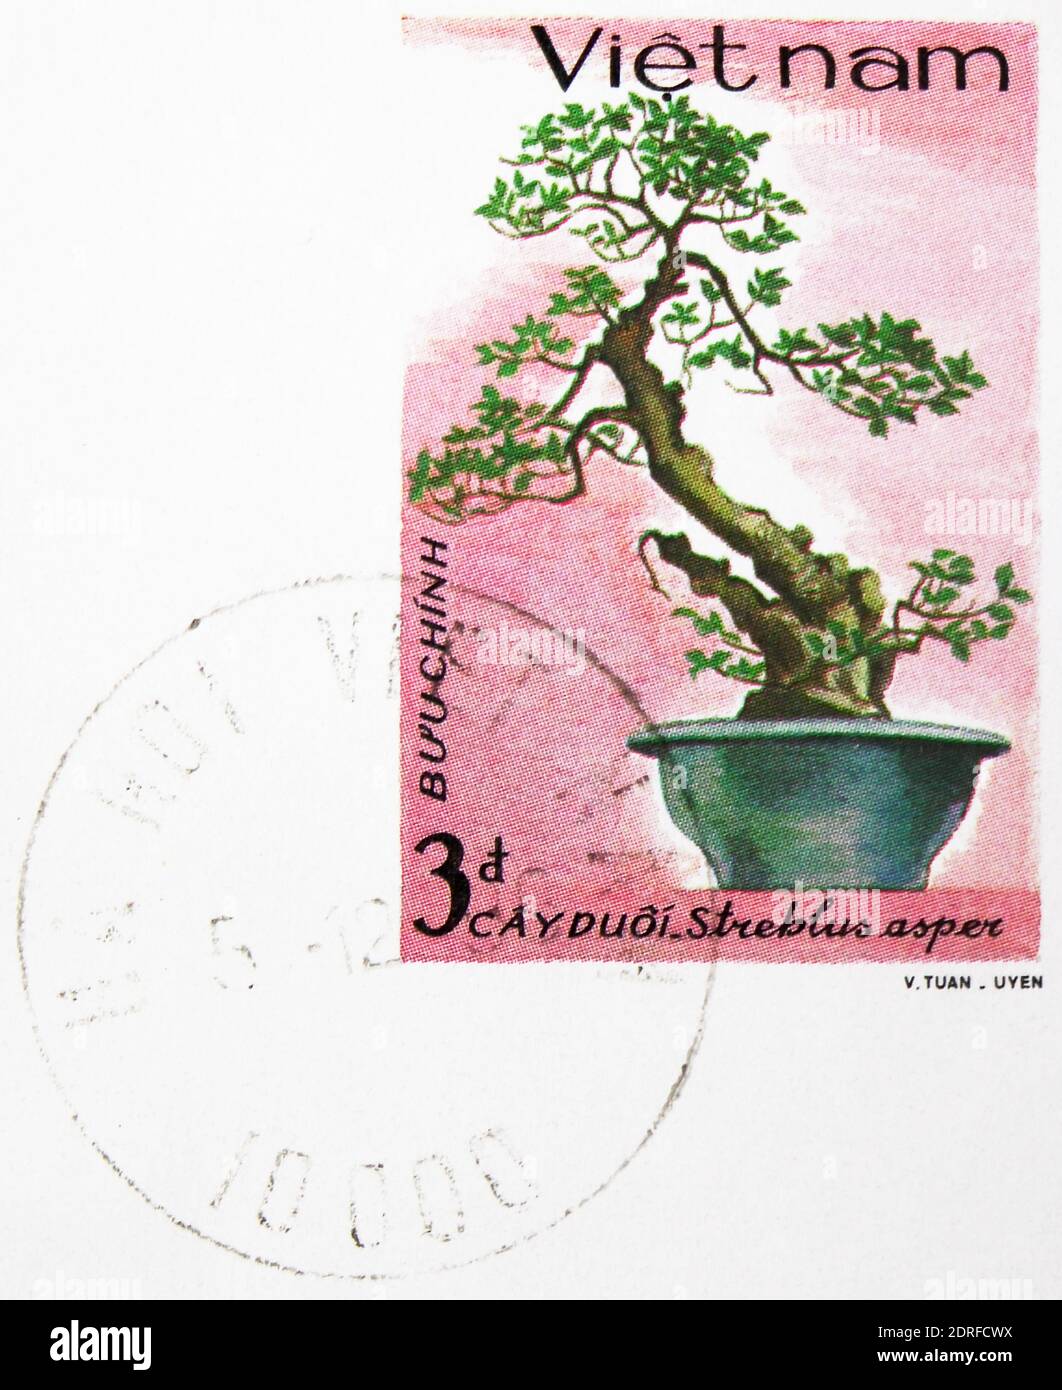 MOSCOU, RUSSIE - 4 JANVIER 2019 : un timbre imprimé au Vietnam montre Streblus (Streblus asper), série vietnamienne Bonsai, vers 1986 Banque D'Images